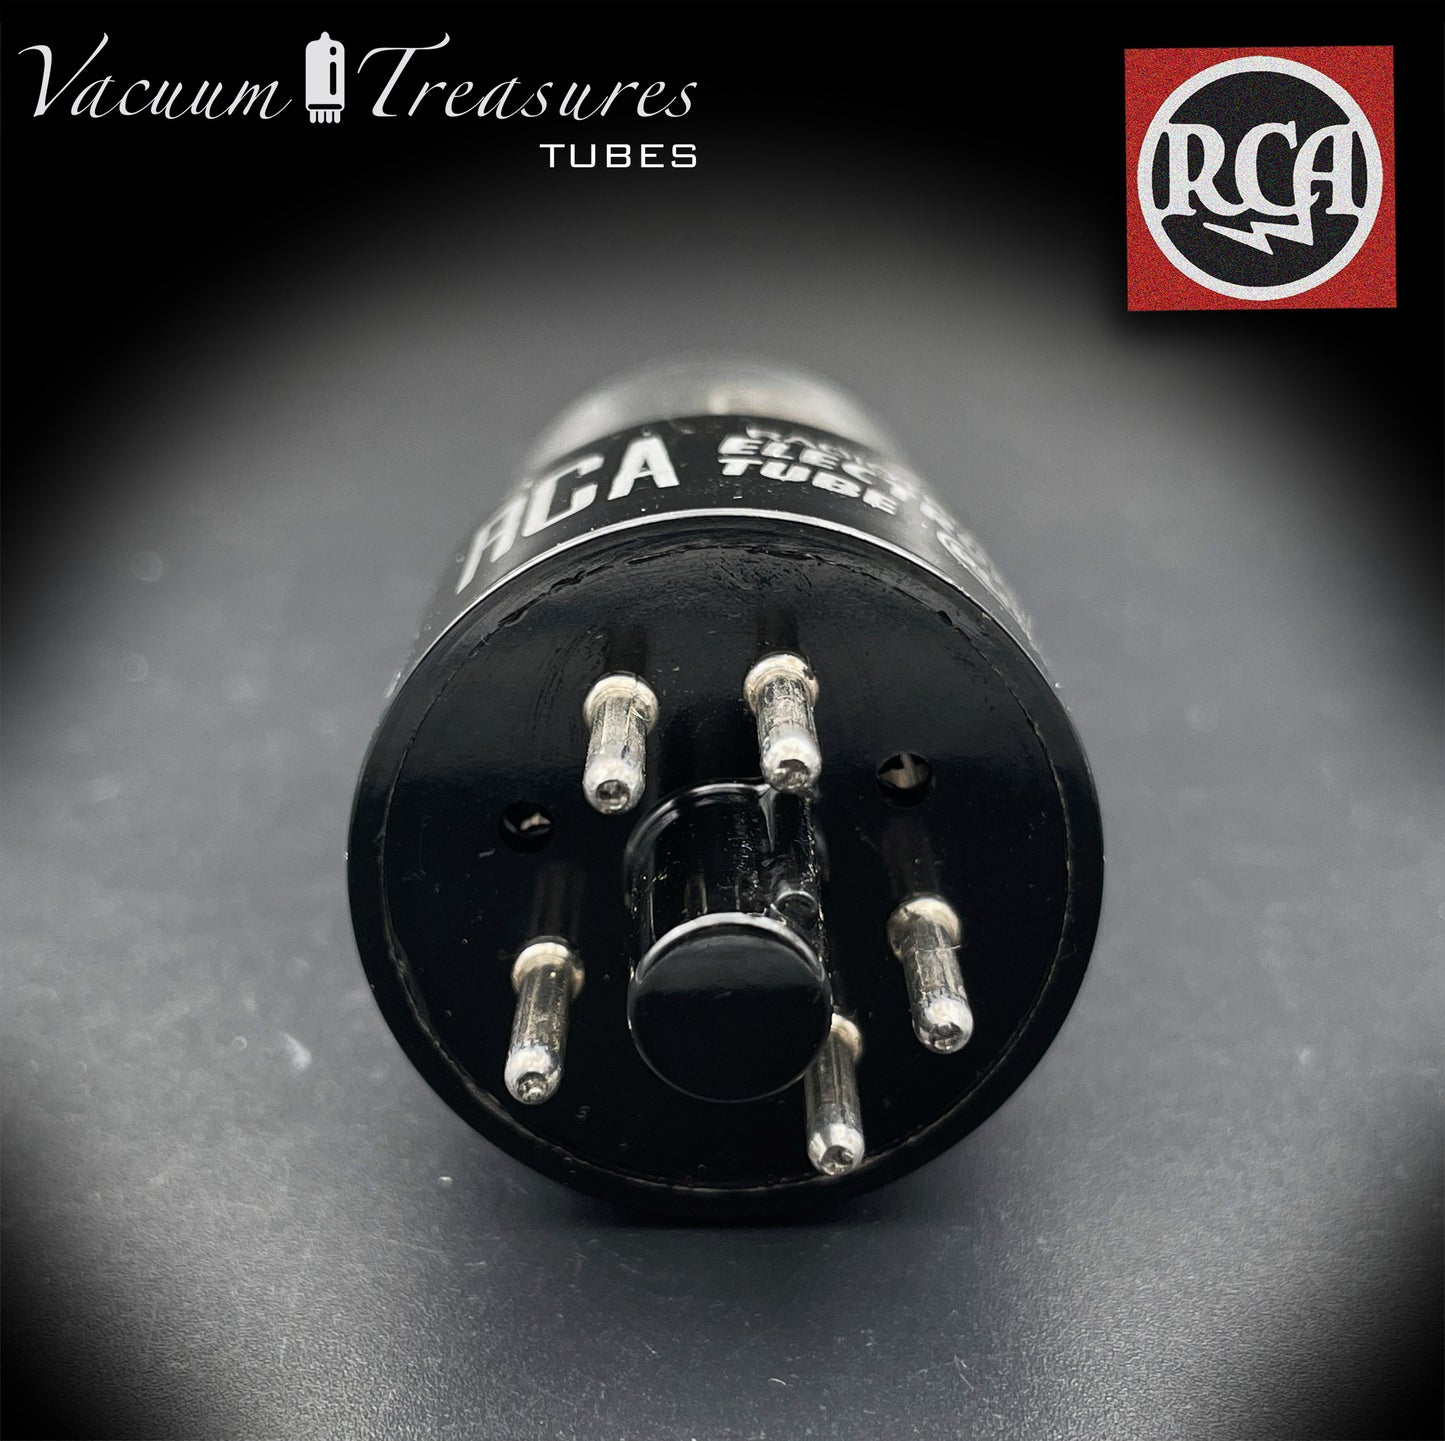 6X5 GT (6Z5P) RCA NOS NIB Placas negras Tubo rectificador cuadrado Getter HECHO EN EE. UU.